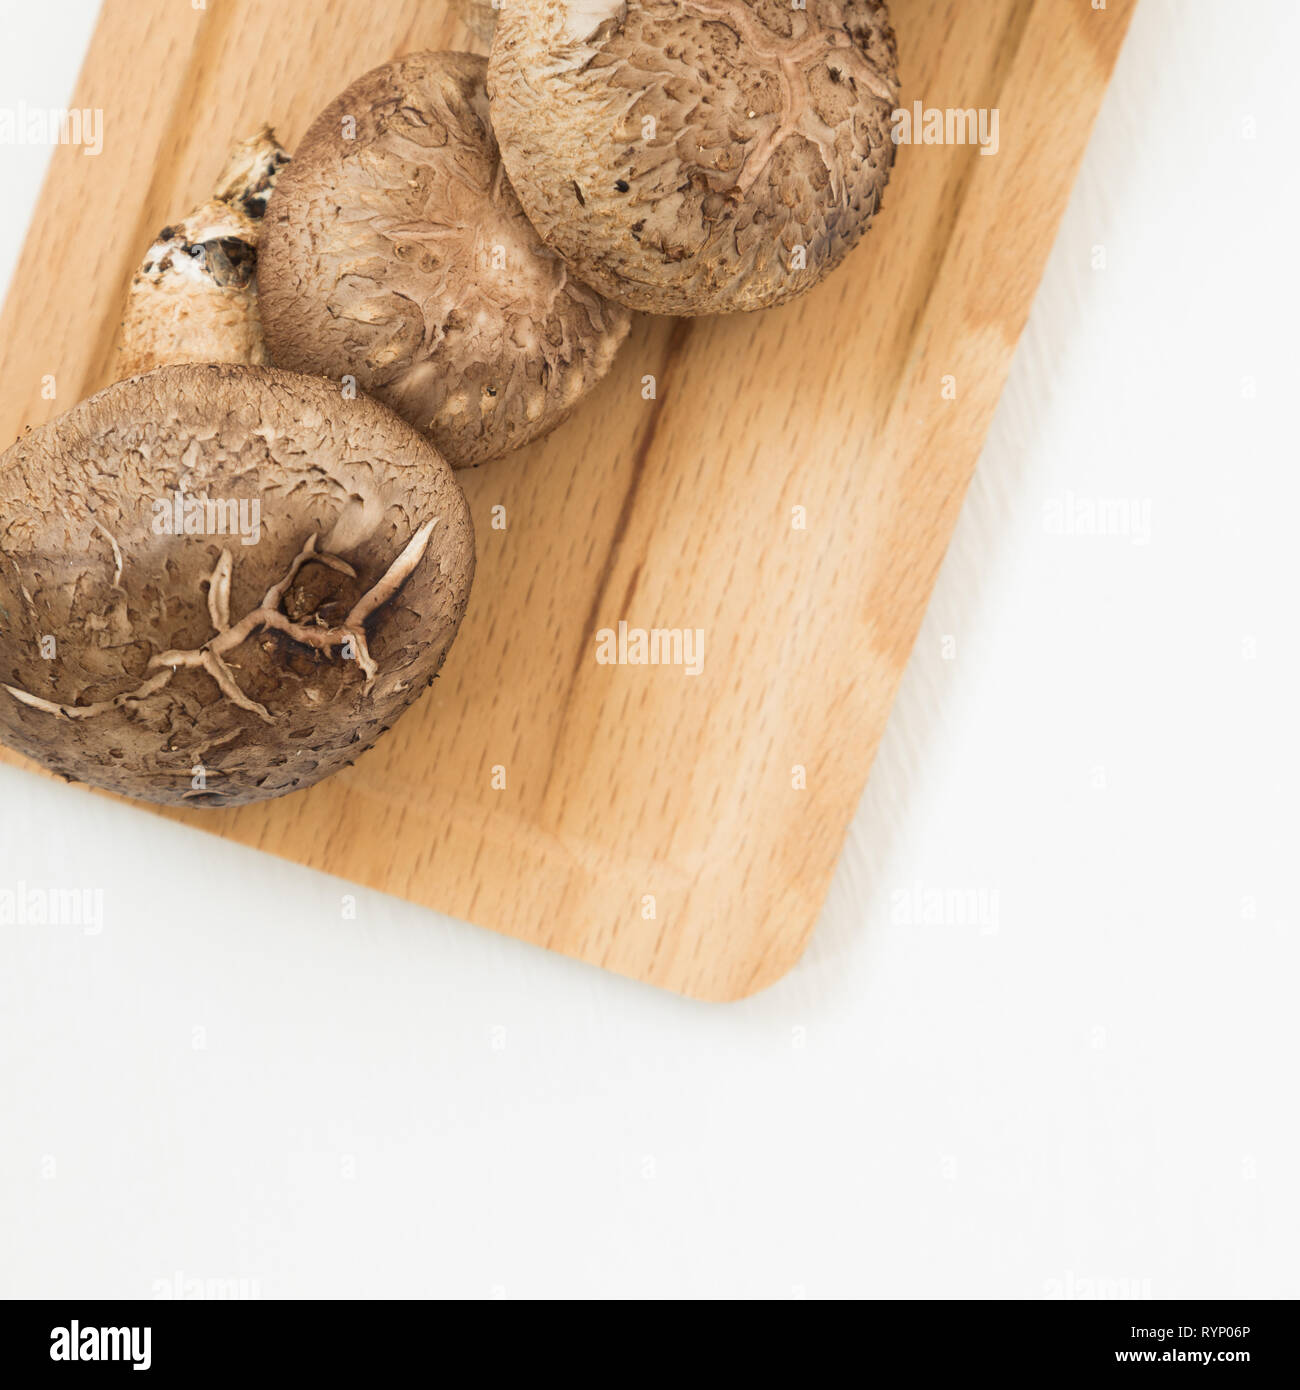 Les champignons frais sur plateau en bois isolé sur fond blanc Banque D'Images